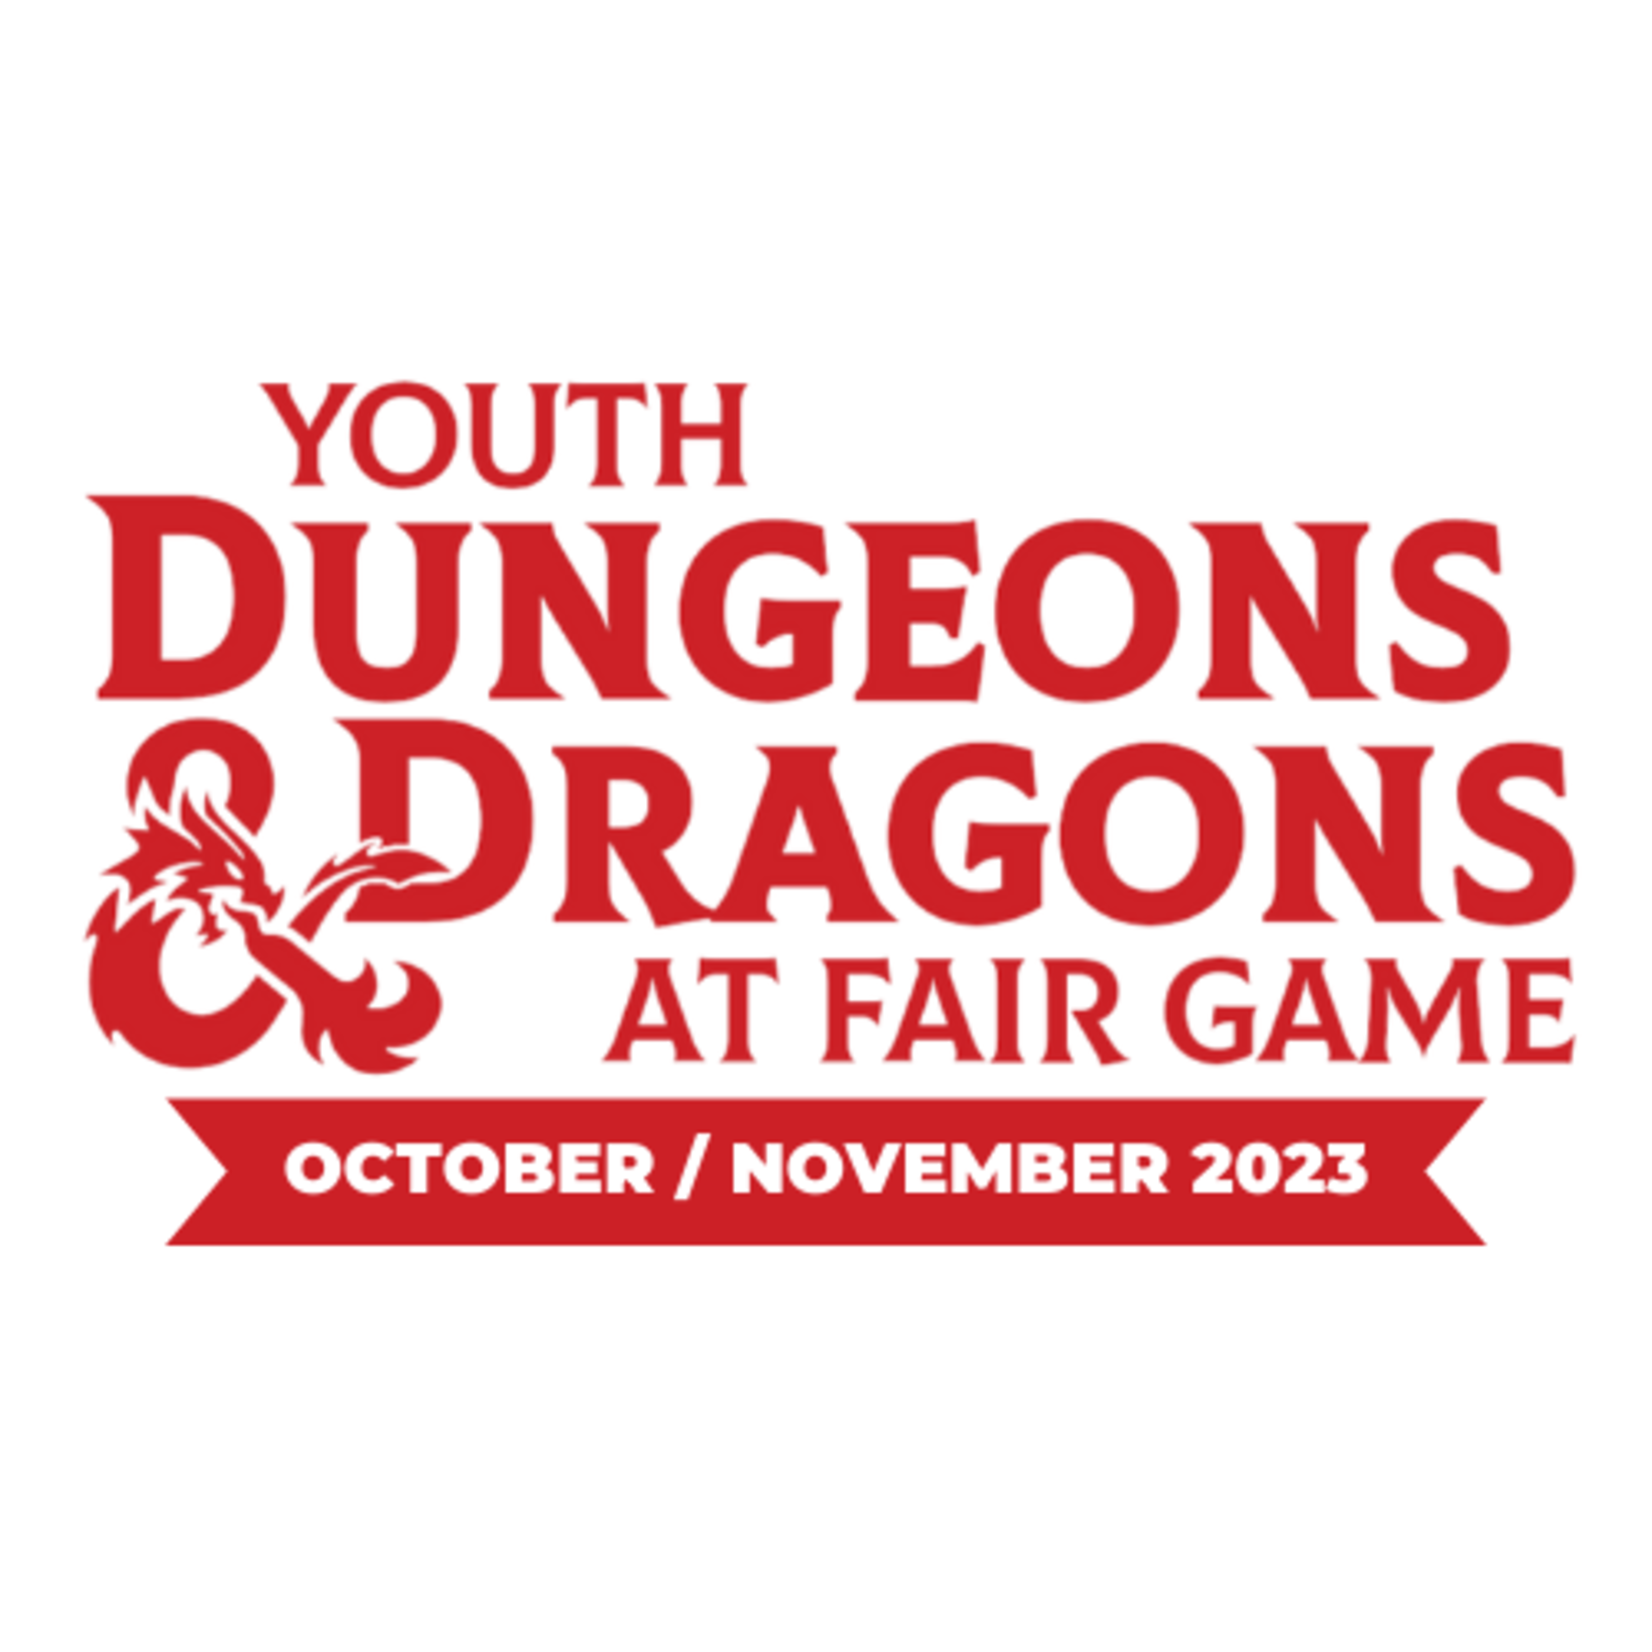 Fair Game YDND Oct/Nov 2023: Tuesday - Group LT1 La Grange 4-6 PM CST (Ages 8-13)